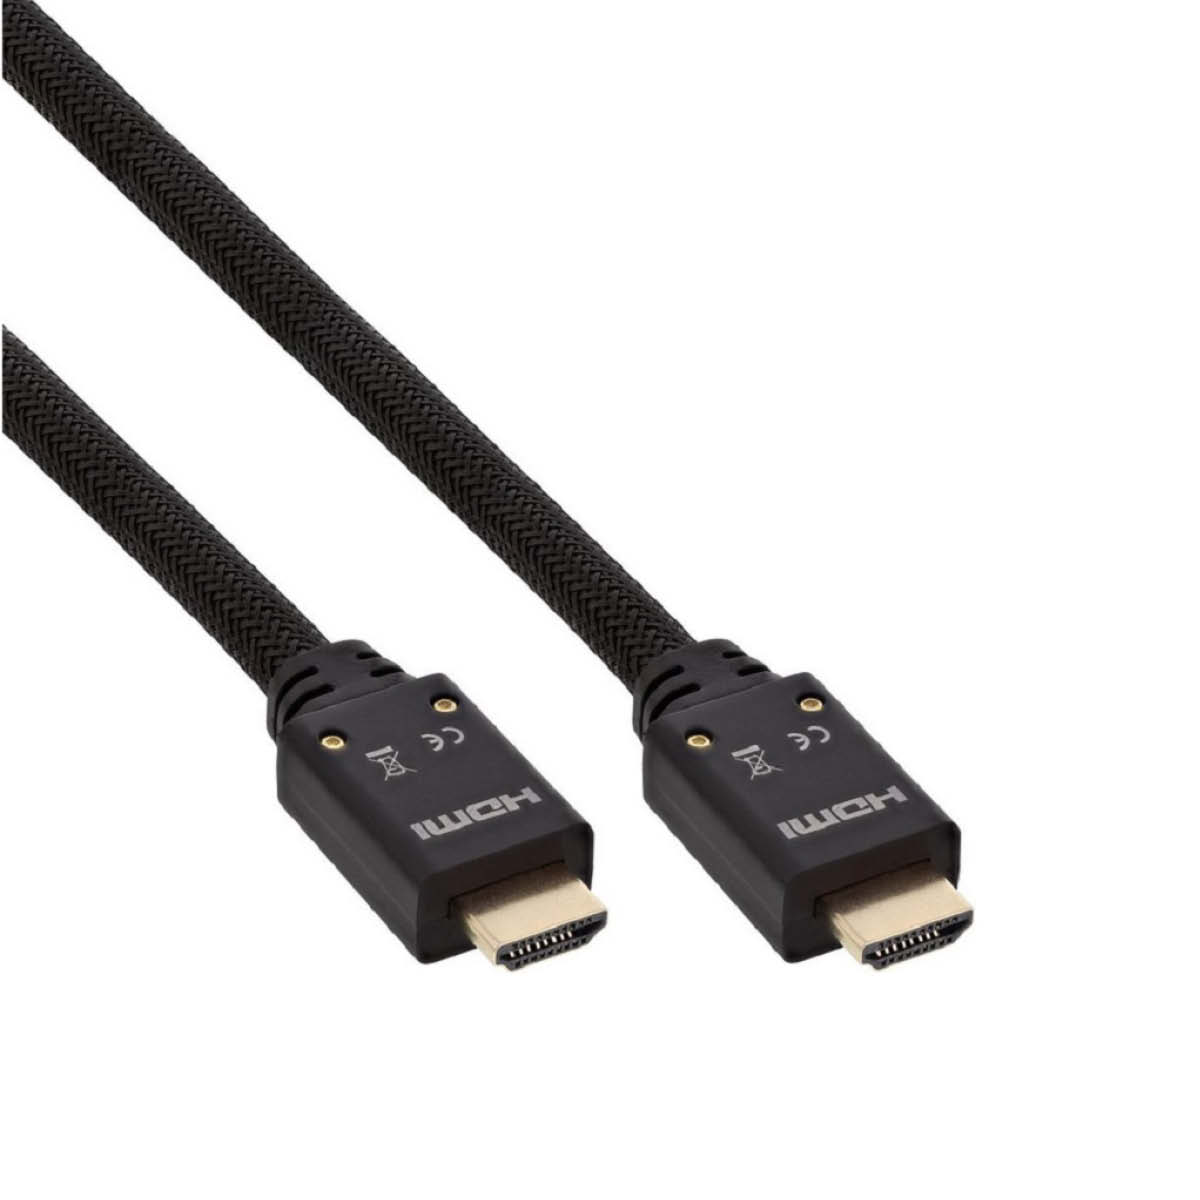 InLine HDMI Kabel High Speed mit Ethernet 15m